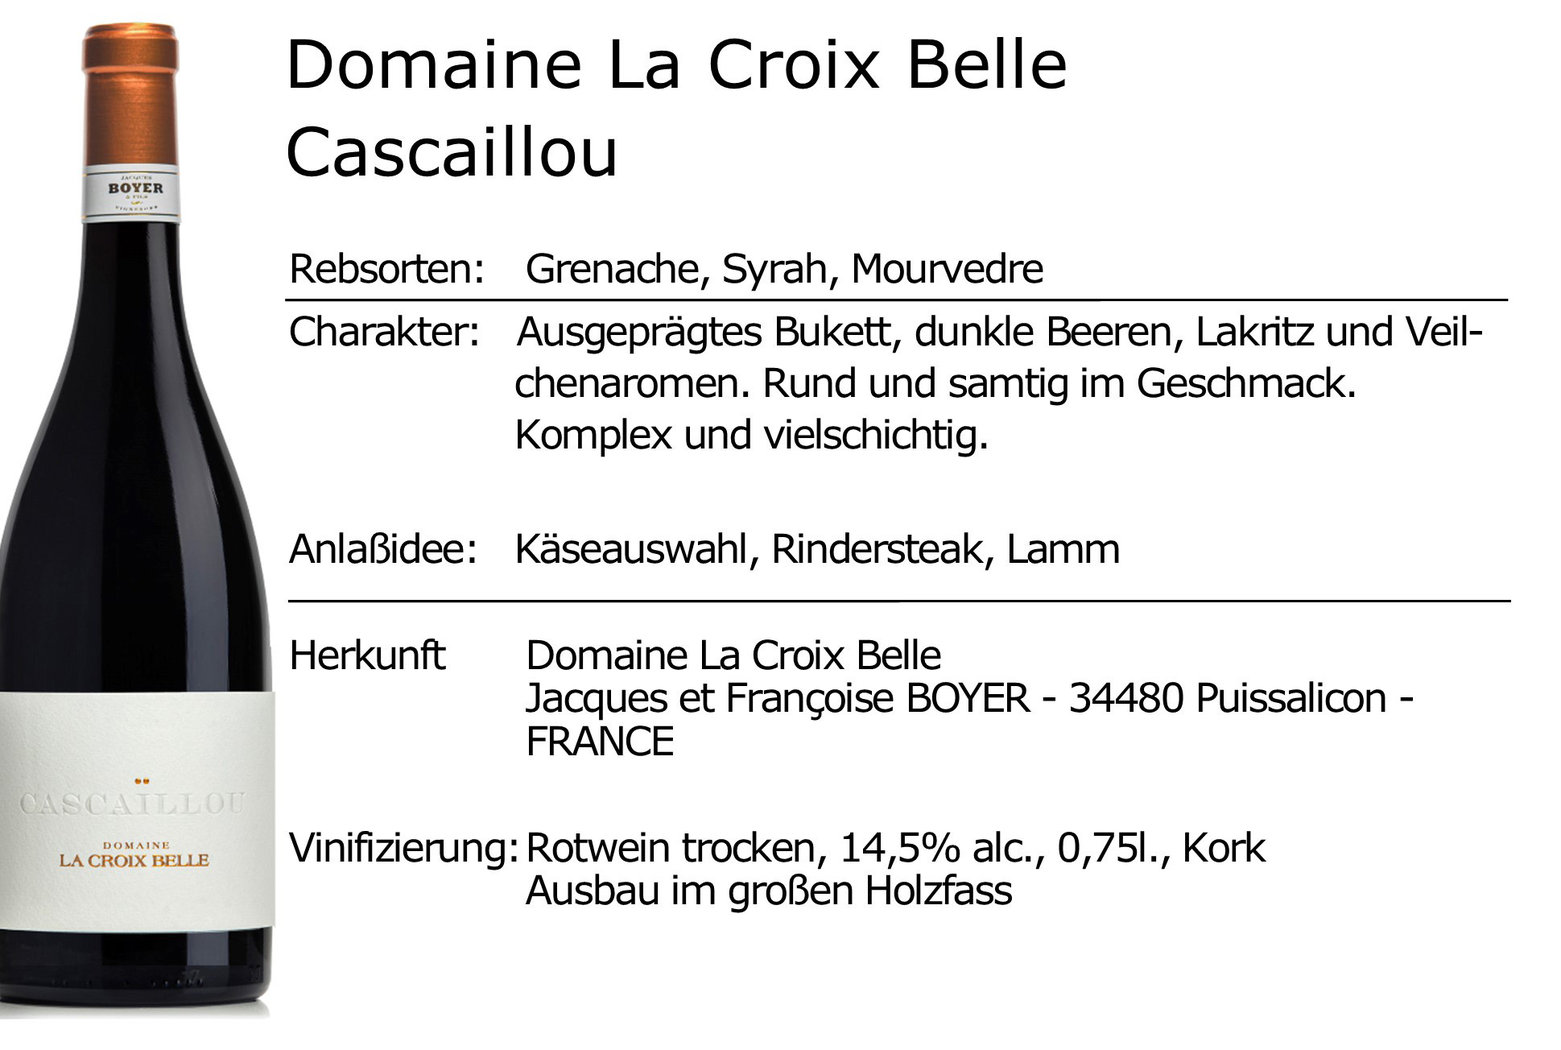 Domaine La Croix Belle Cascaillou 2019